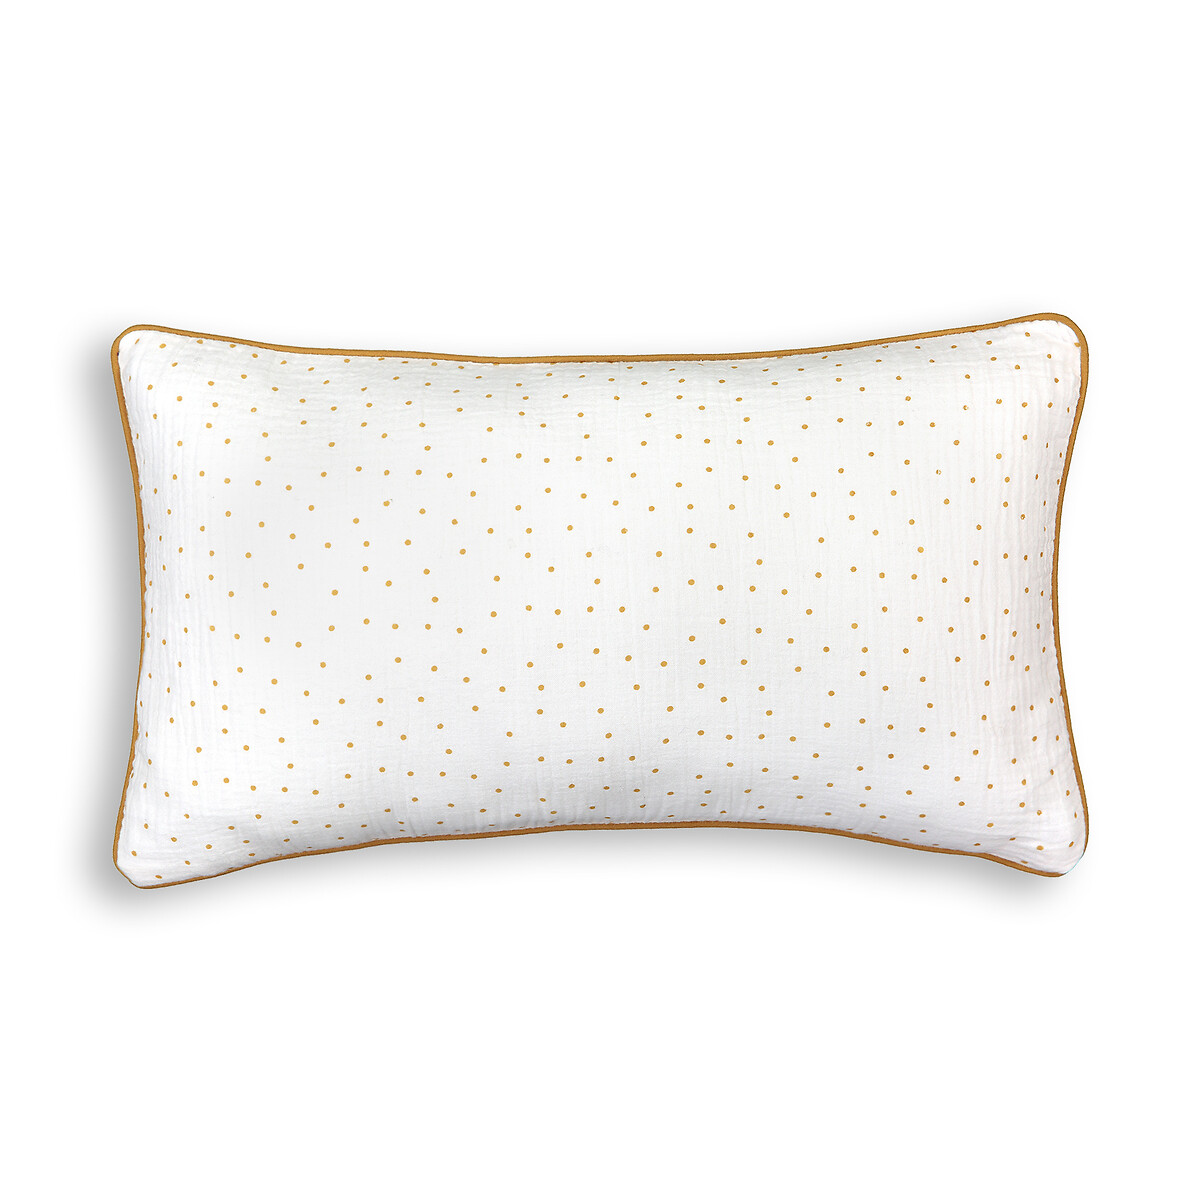 Чехол LA REDOUTE INTERIEURS На подушку из хлопчатобумажной газовой ткани Nola 50 x 30 см желтый, размер 50 x 30 см - фото 1